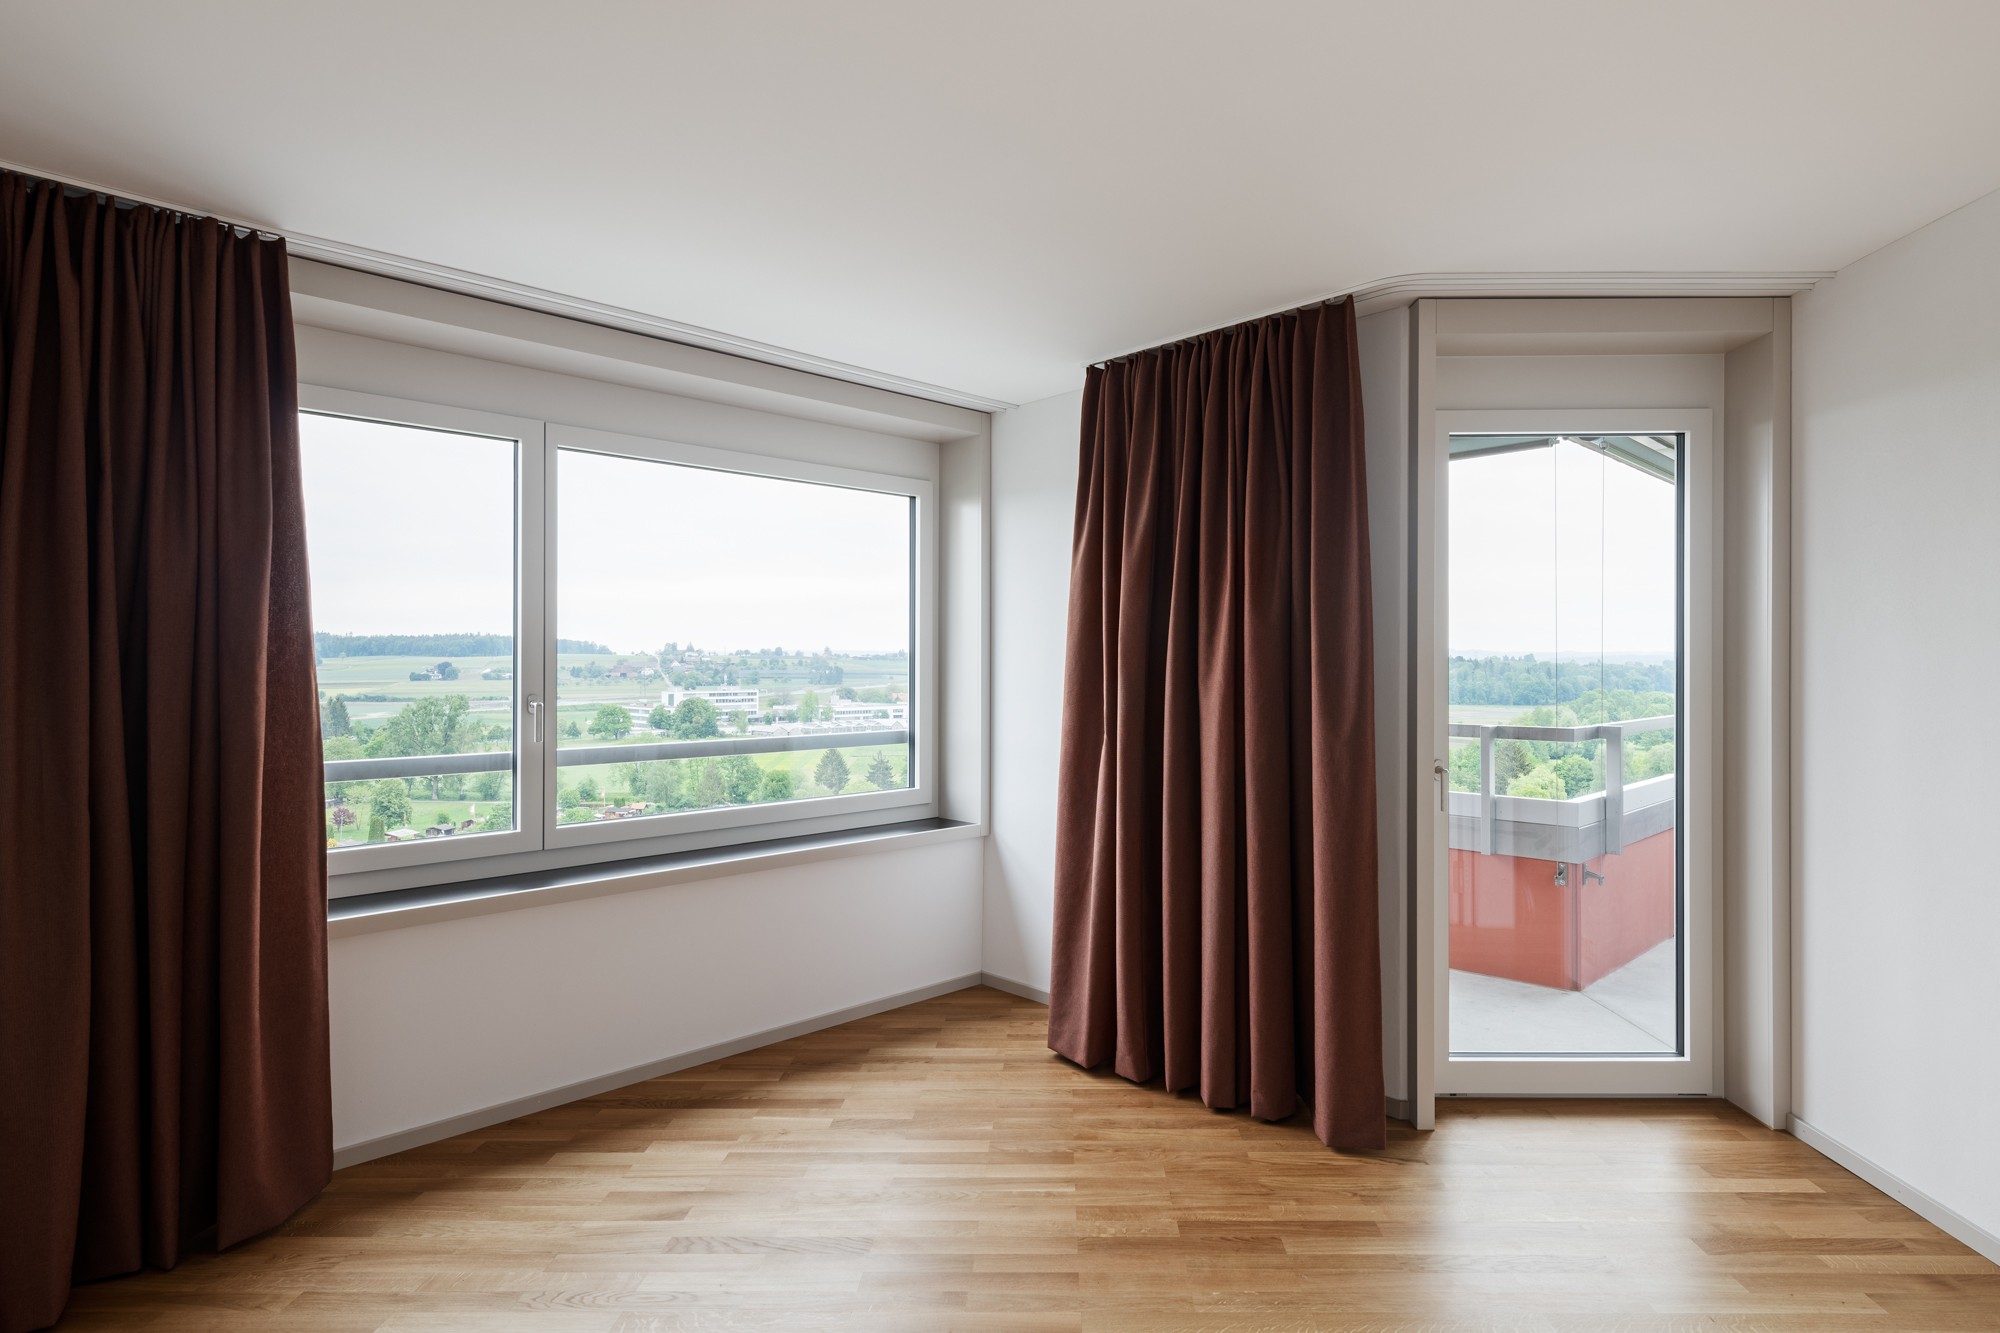 Blick in ein (noch unmöbliertes) Appartement mit Aussicht. (© Beat Bühler, Zürich)